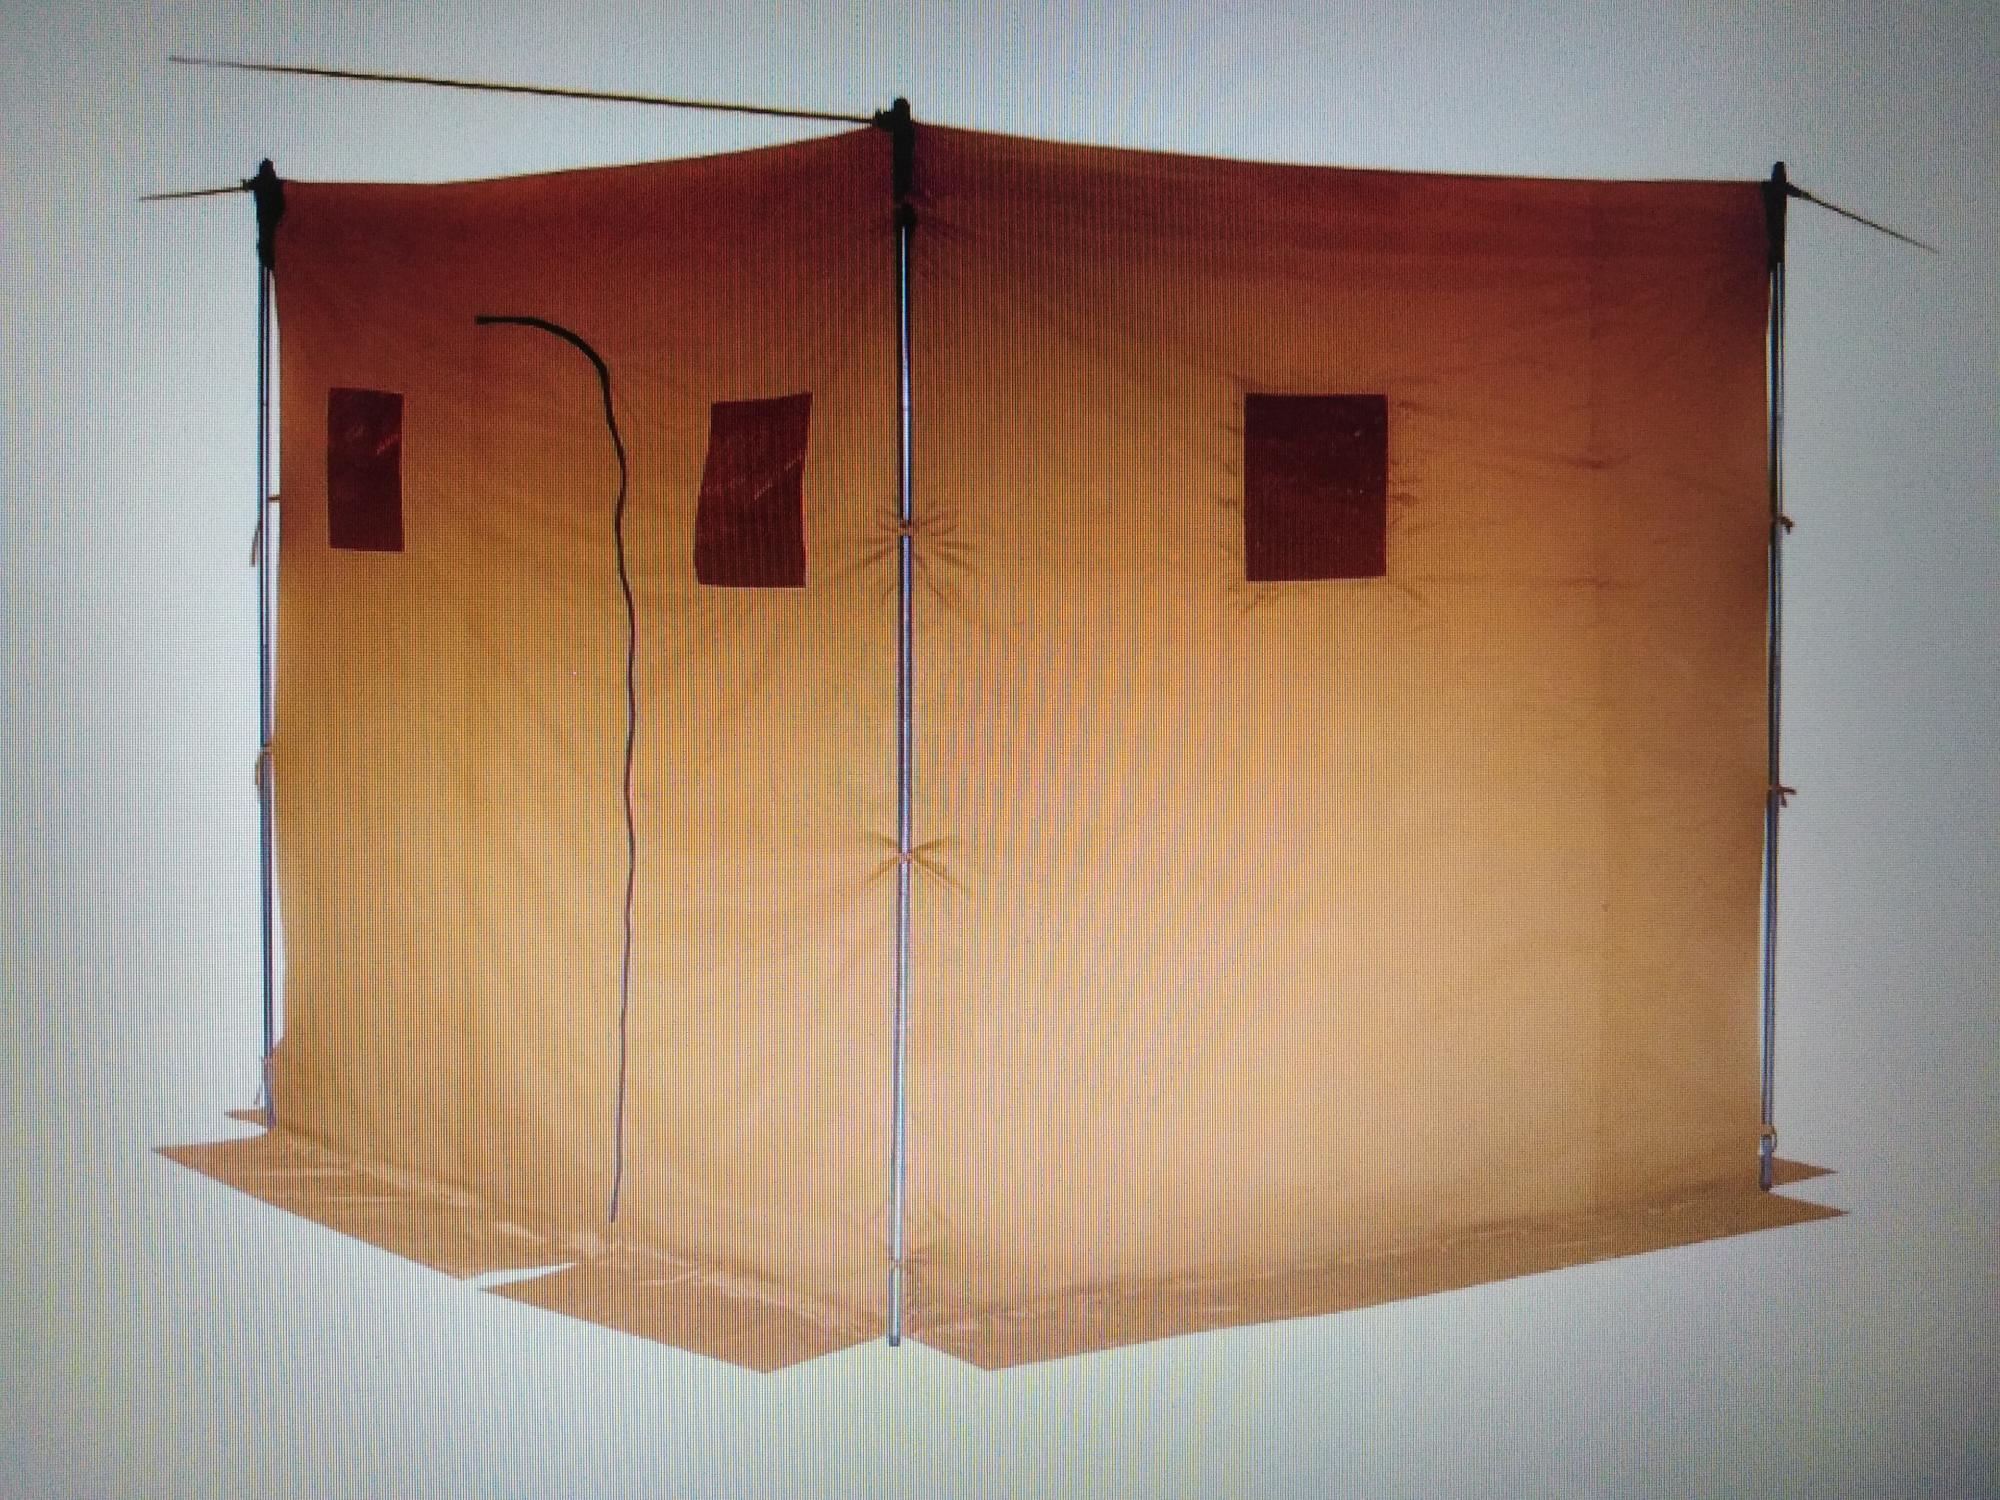 Походная баня - делаем своими руками из палатки и полиэтилена: видео, фото, выкройки и чертежи